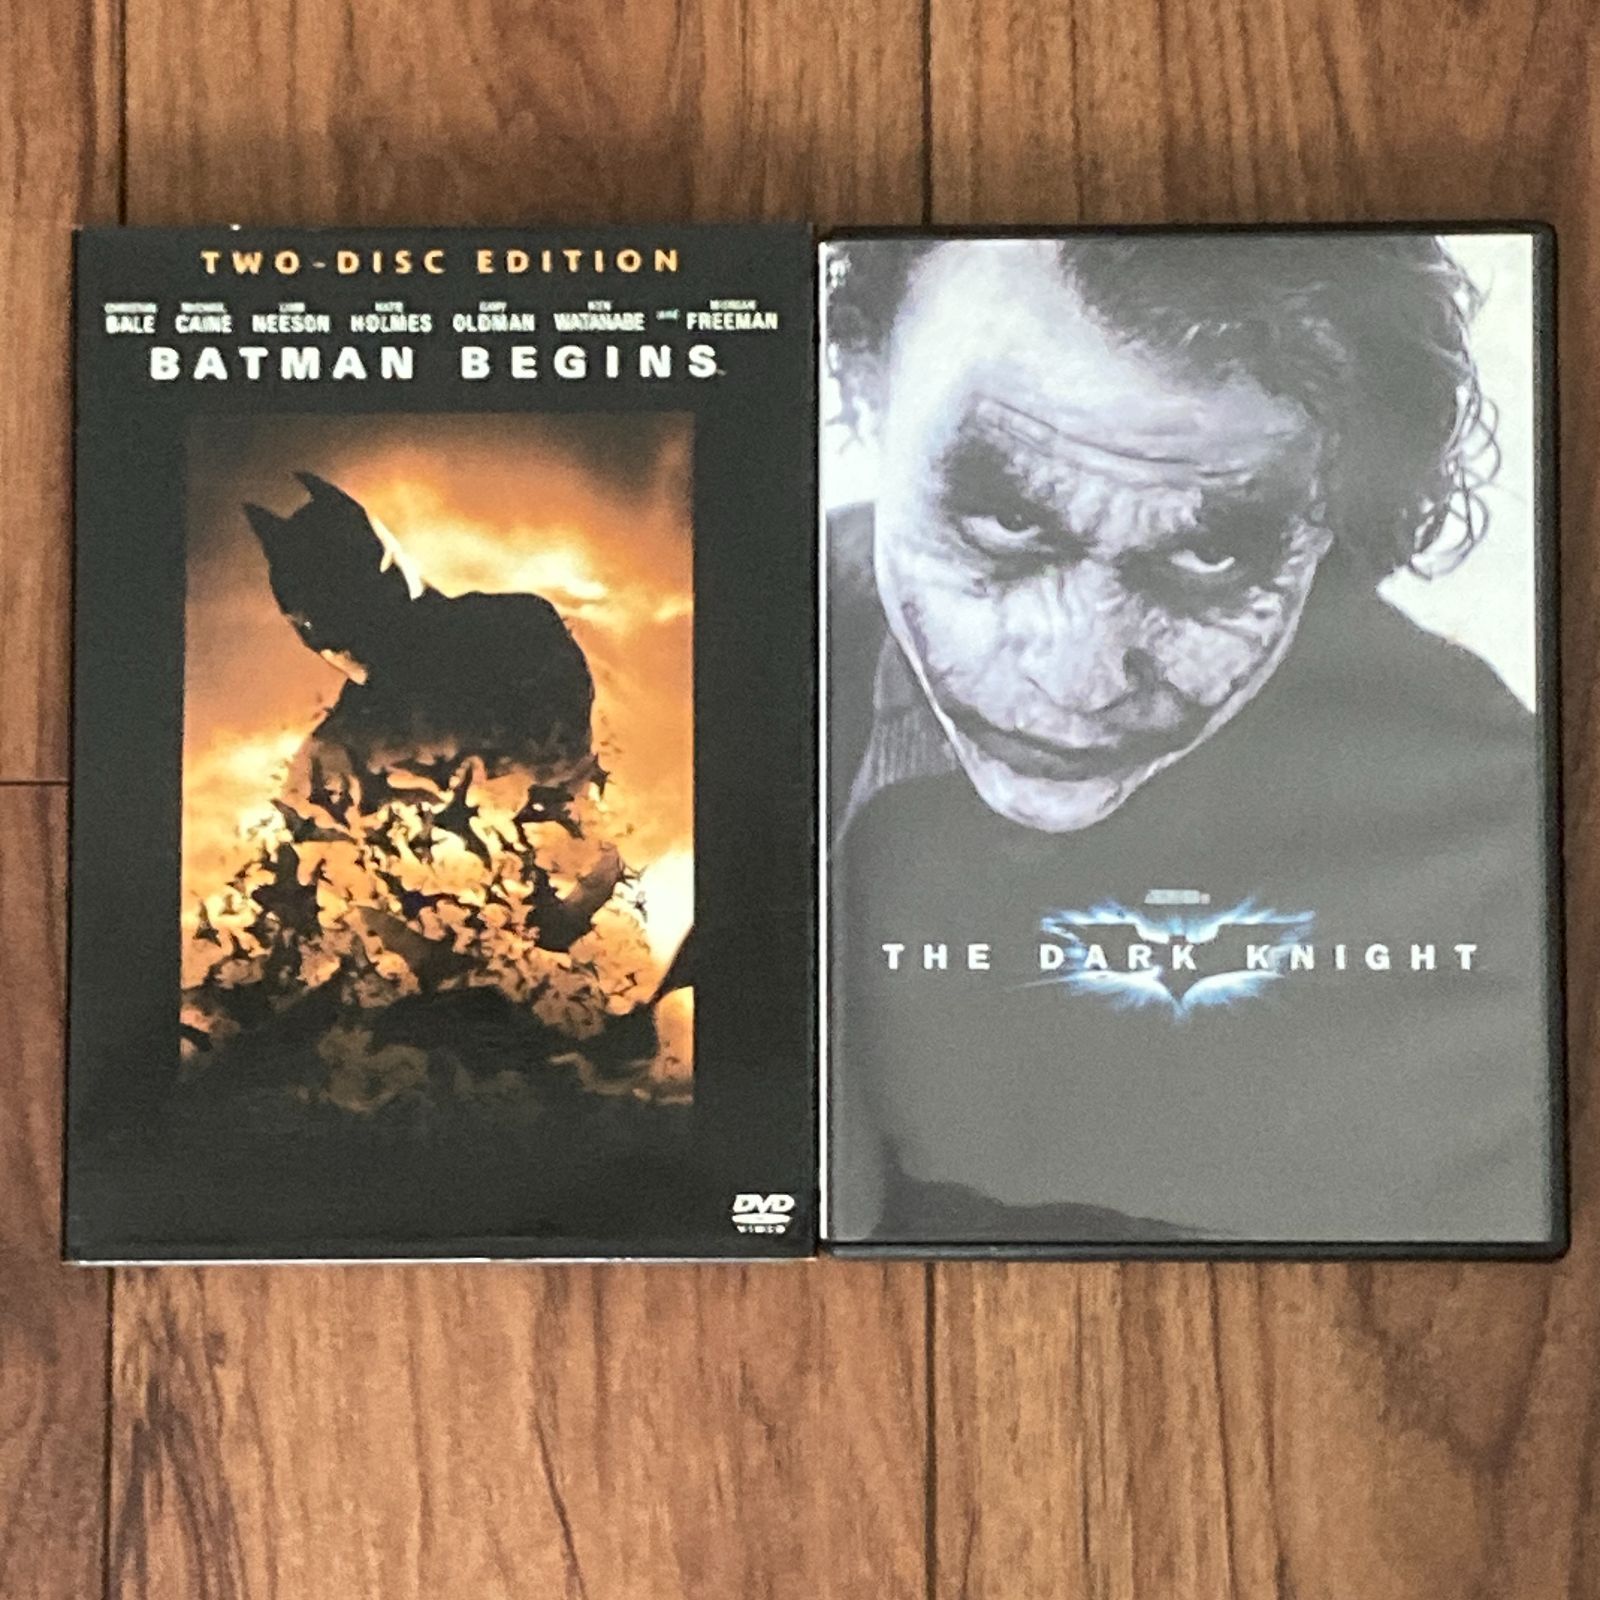 バットマン ビギンズ スペシャル エディション Batman Begins Special Edition  2 Disc Set